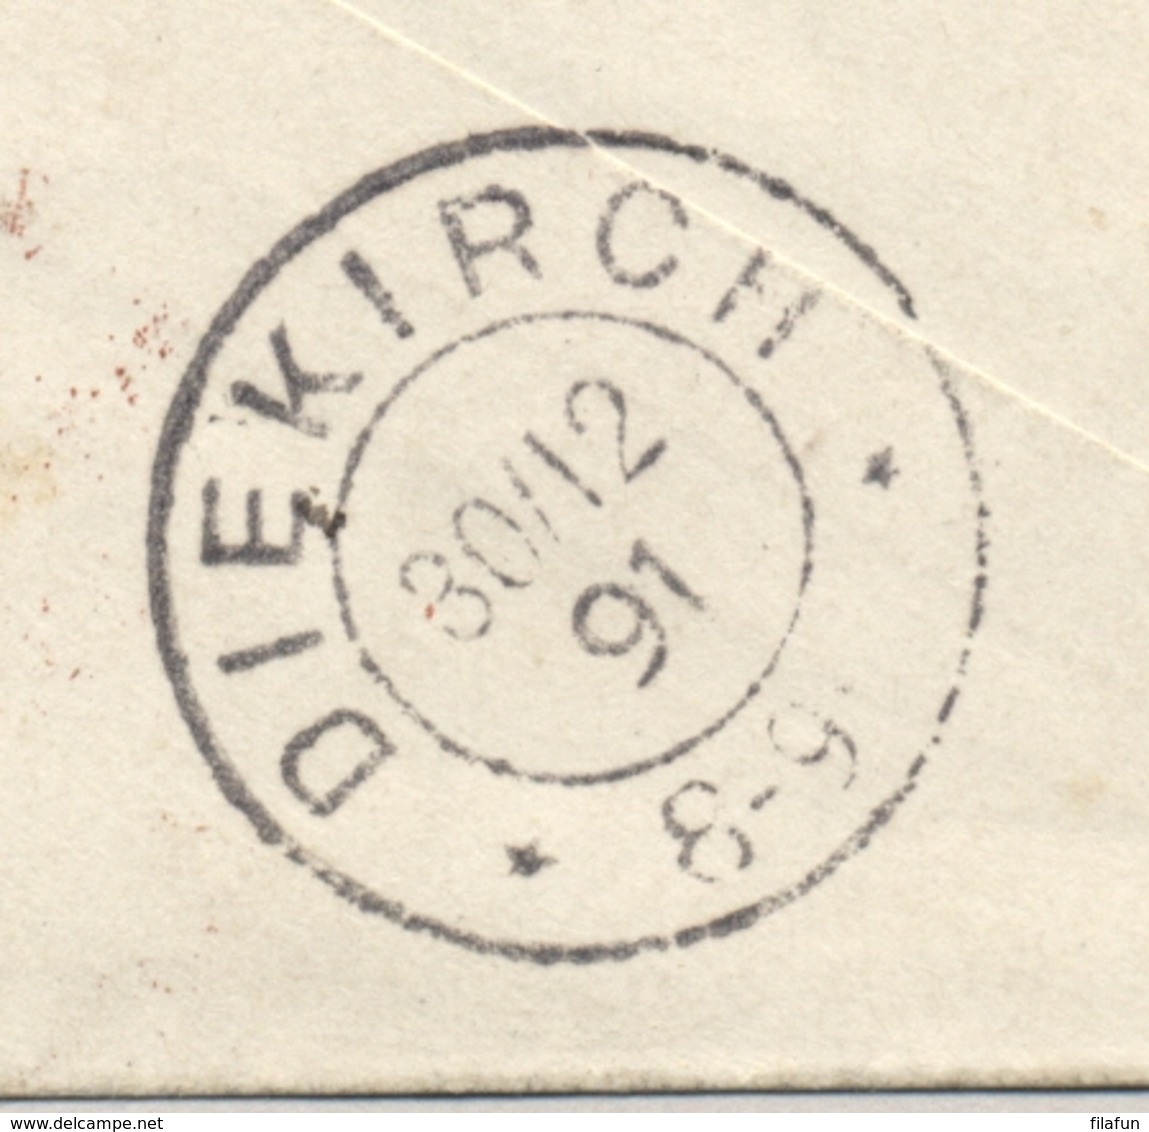 Nederlands Indië - 1891 - 10 en 12,5 cent Willem III op envelop G7 - R-cover van Weltevreden naar DIEKIRCH / Luxembourg